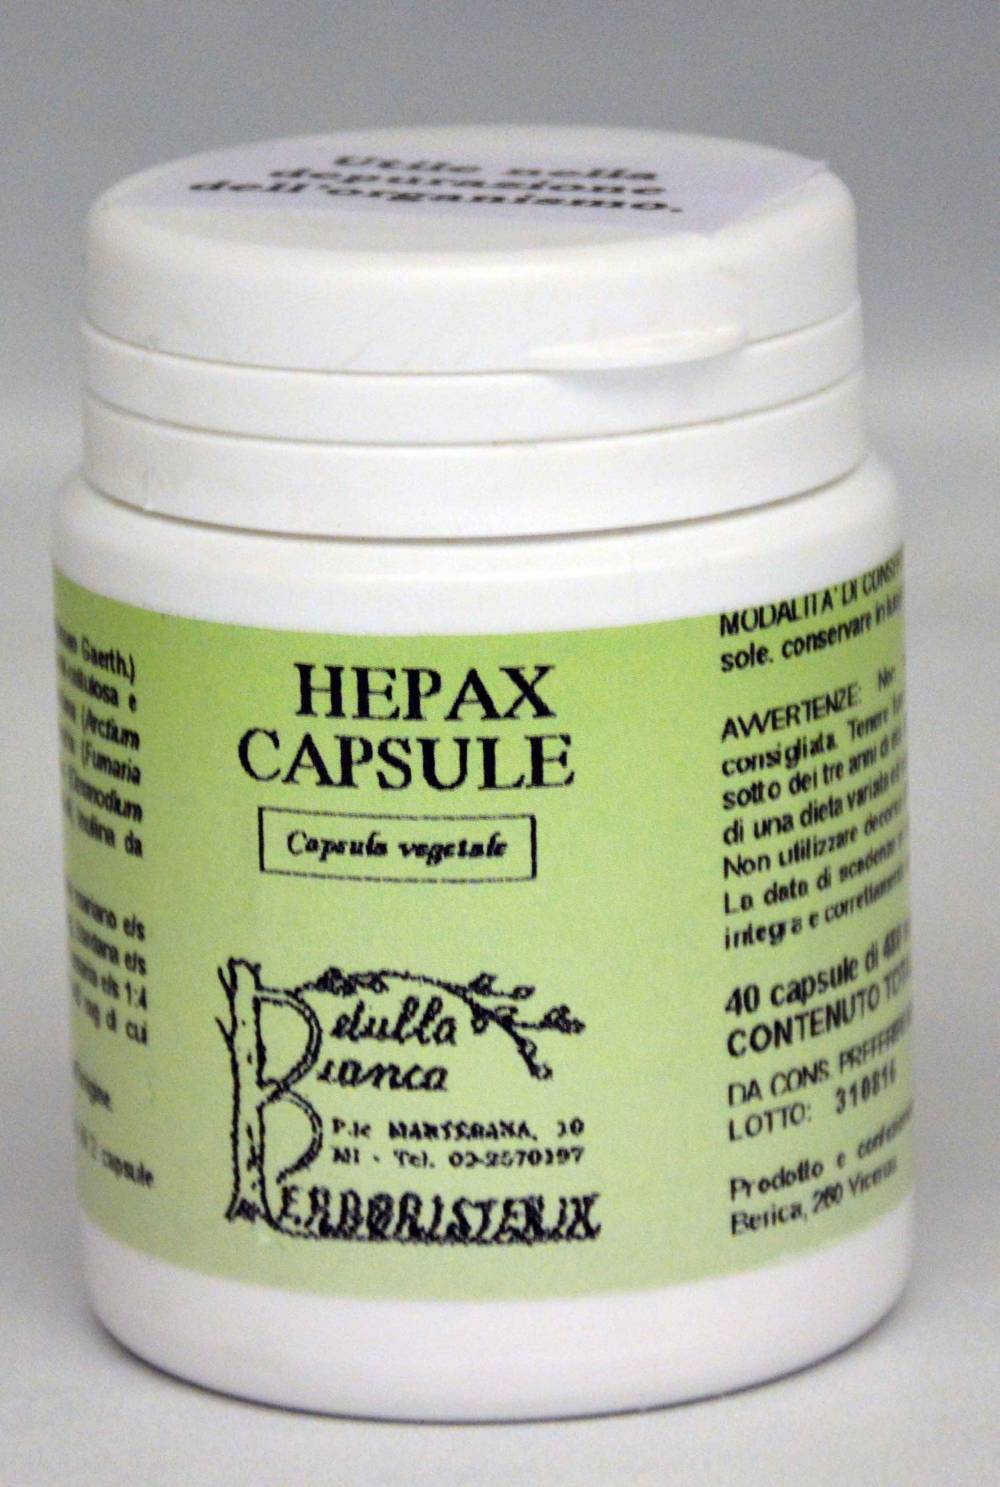 Hepax capsule